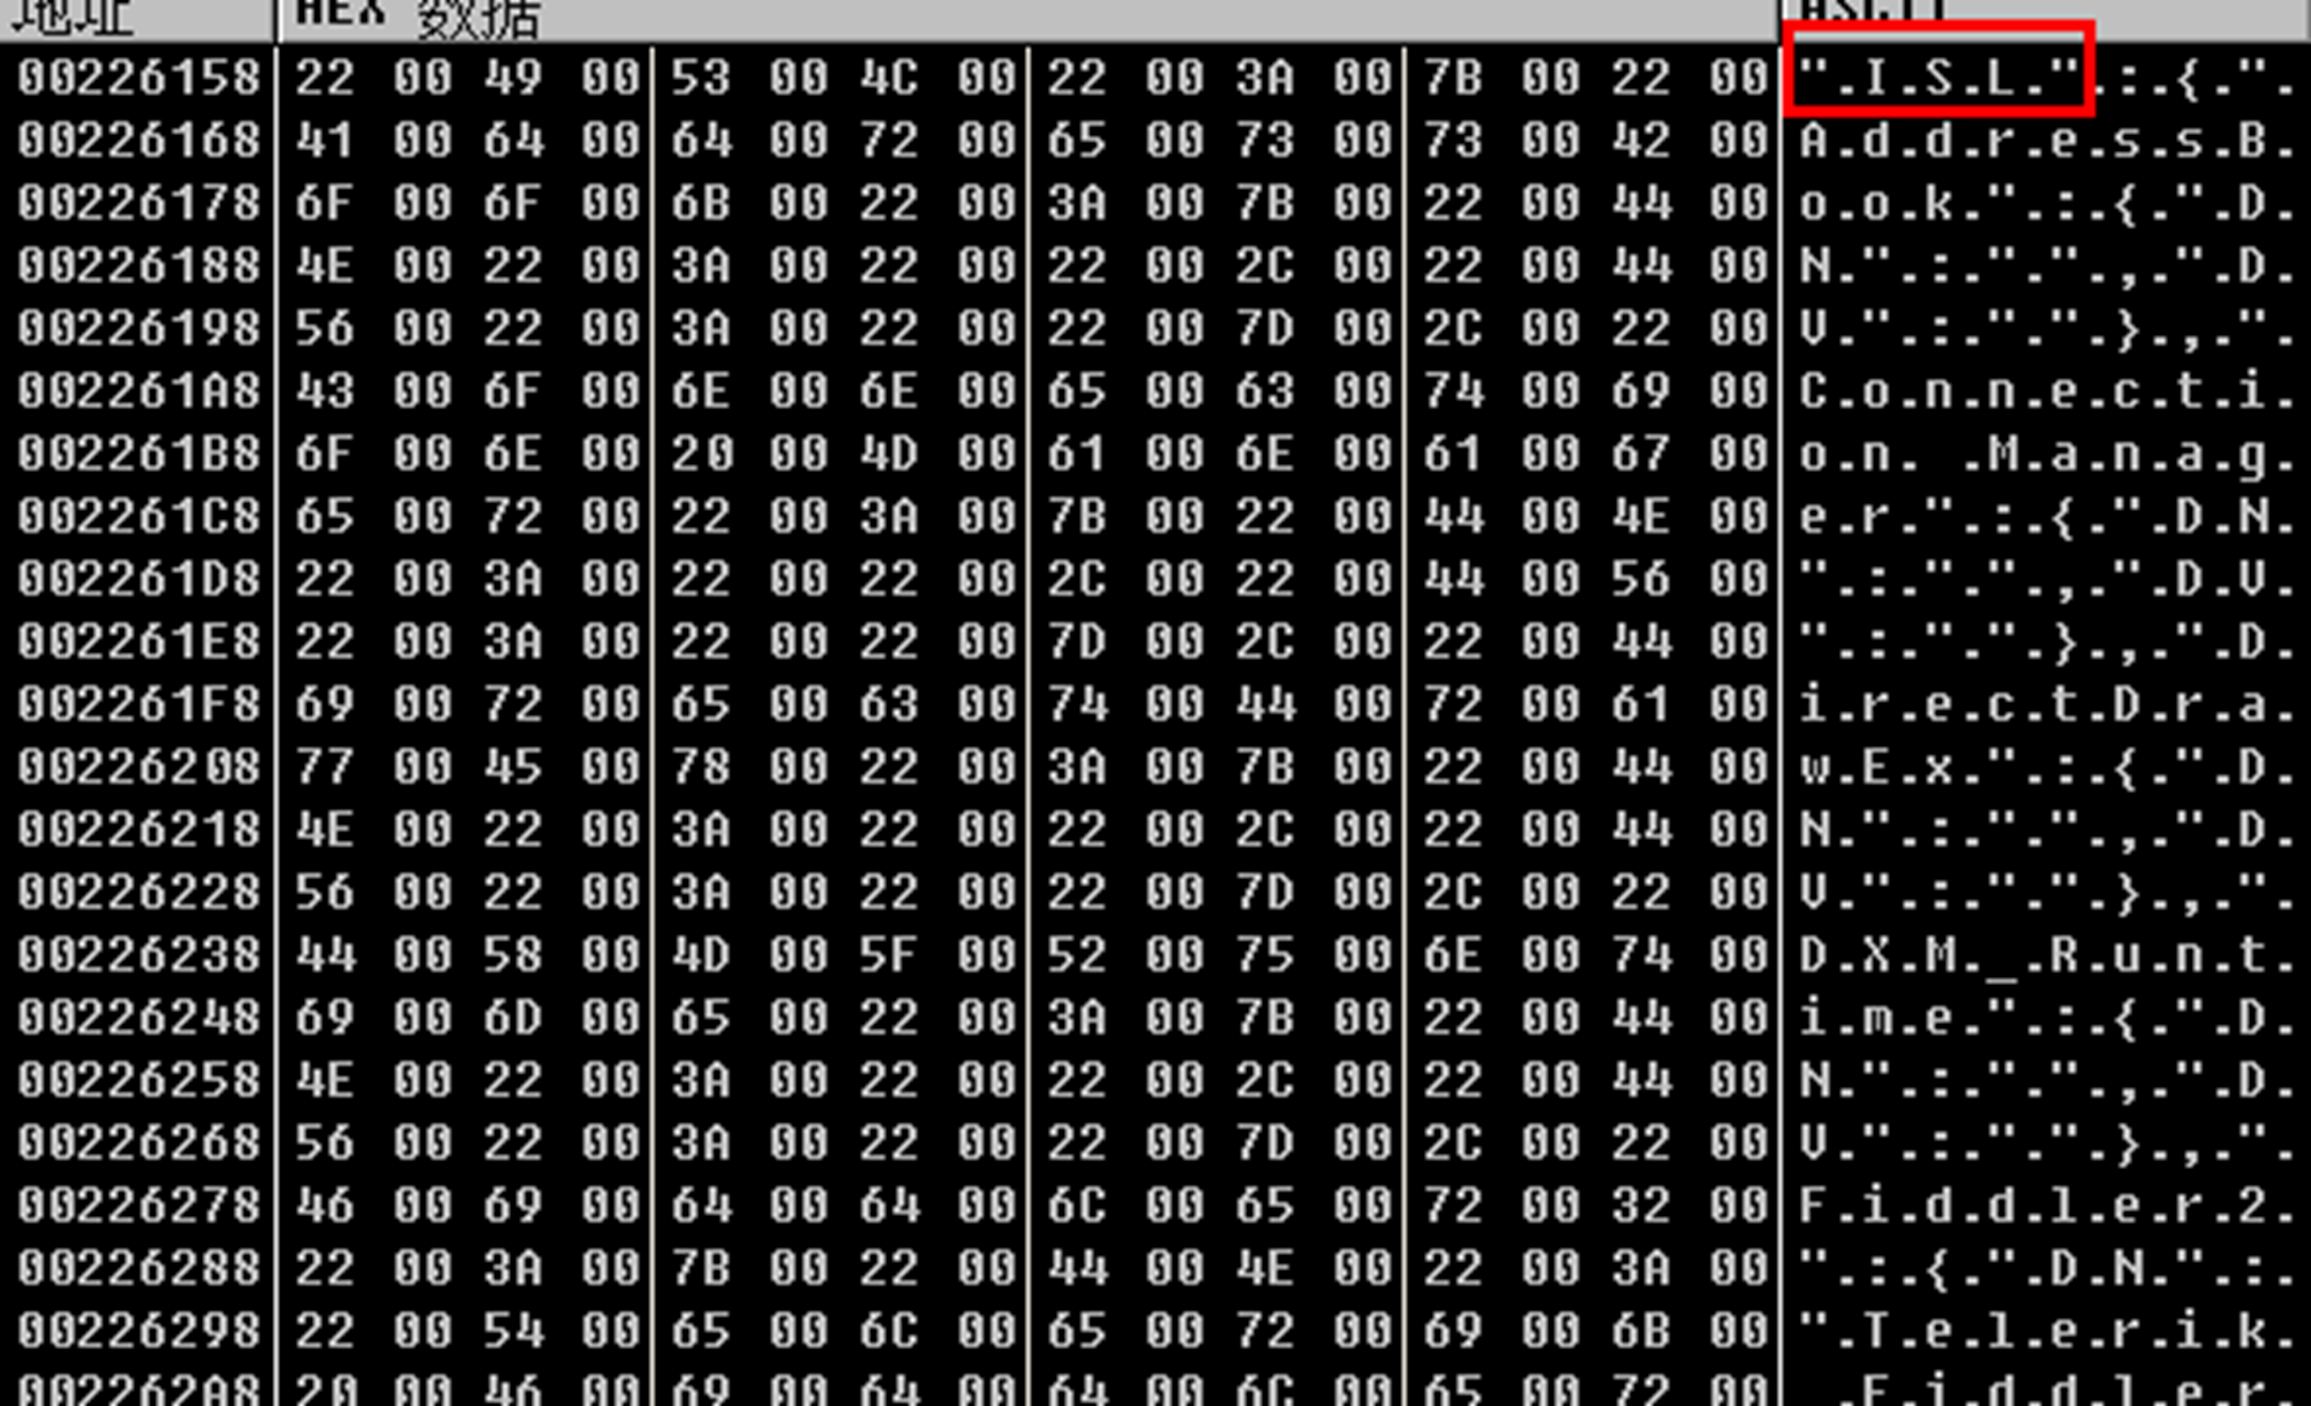 蓝宝菇(APT-C-12)最新攻击样本及C&C机制分析-第14张图片-网盾网络安全培训